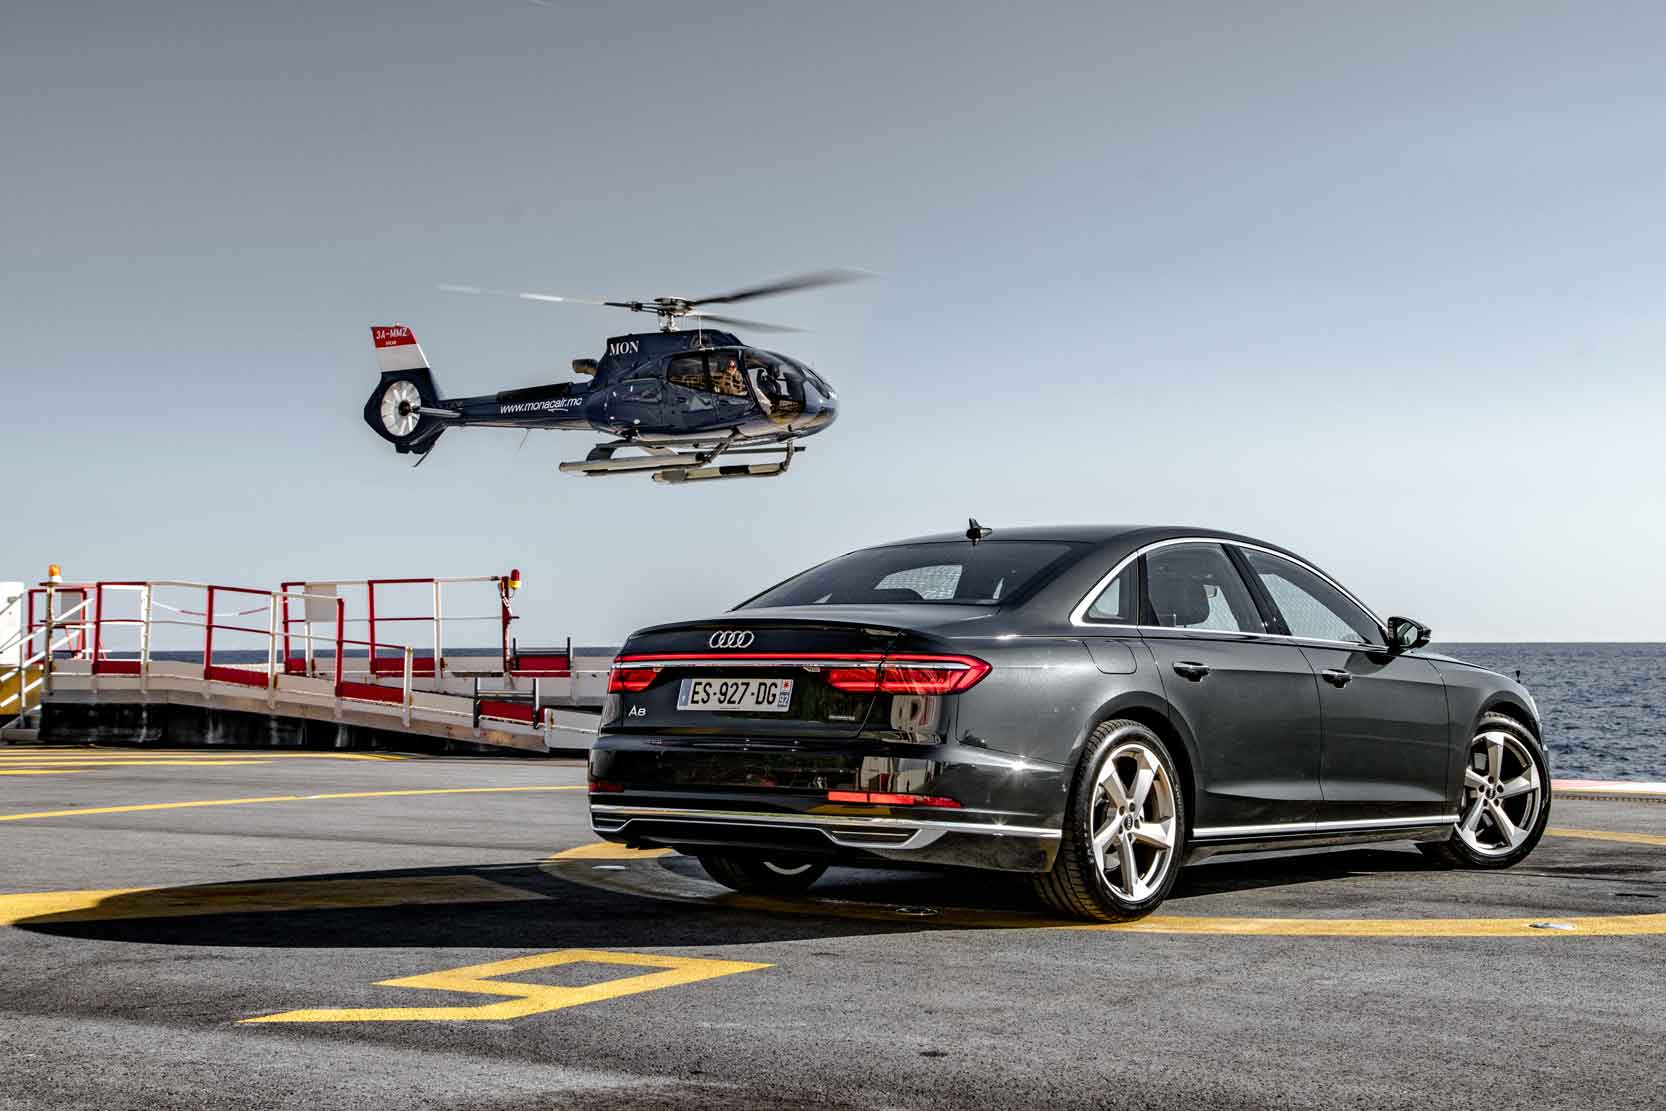 Image principale de l'actu: Essai nouvelle Audi A8 : le vaisseau admirable des ambassadeurs